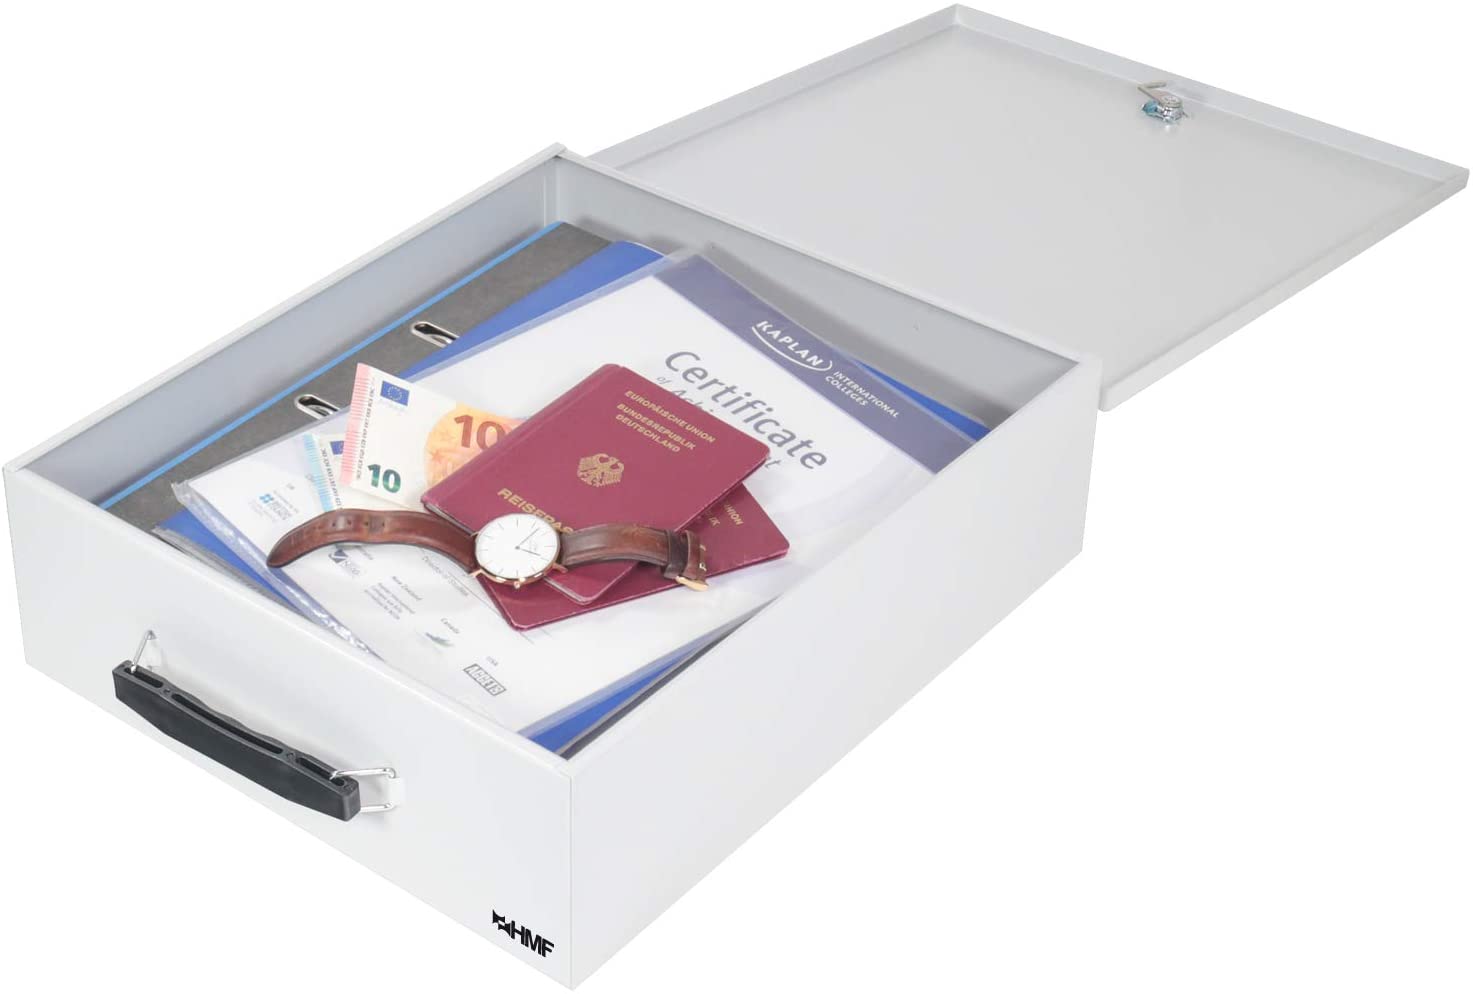 HMF Abschließbare XL Dokumentenkassette für Ordner DIN A4 / B4